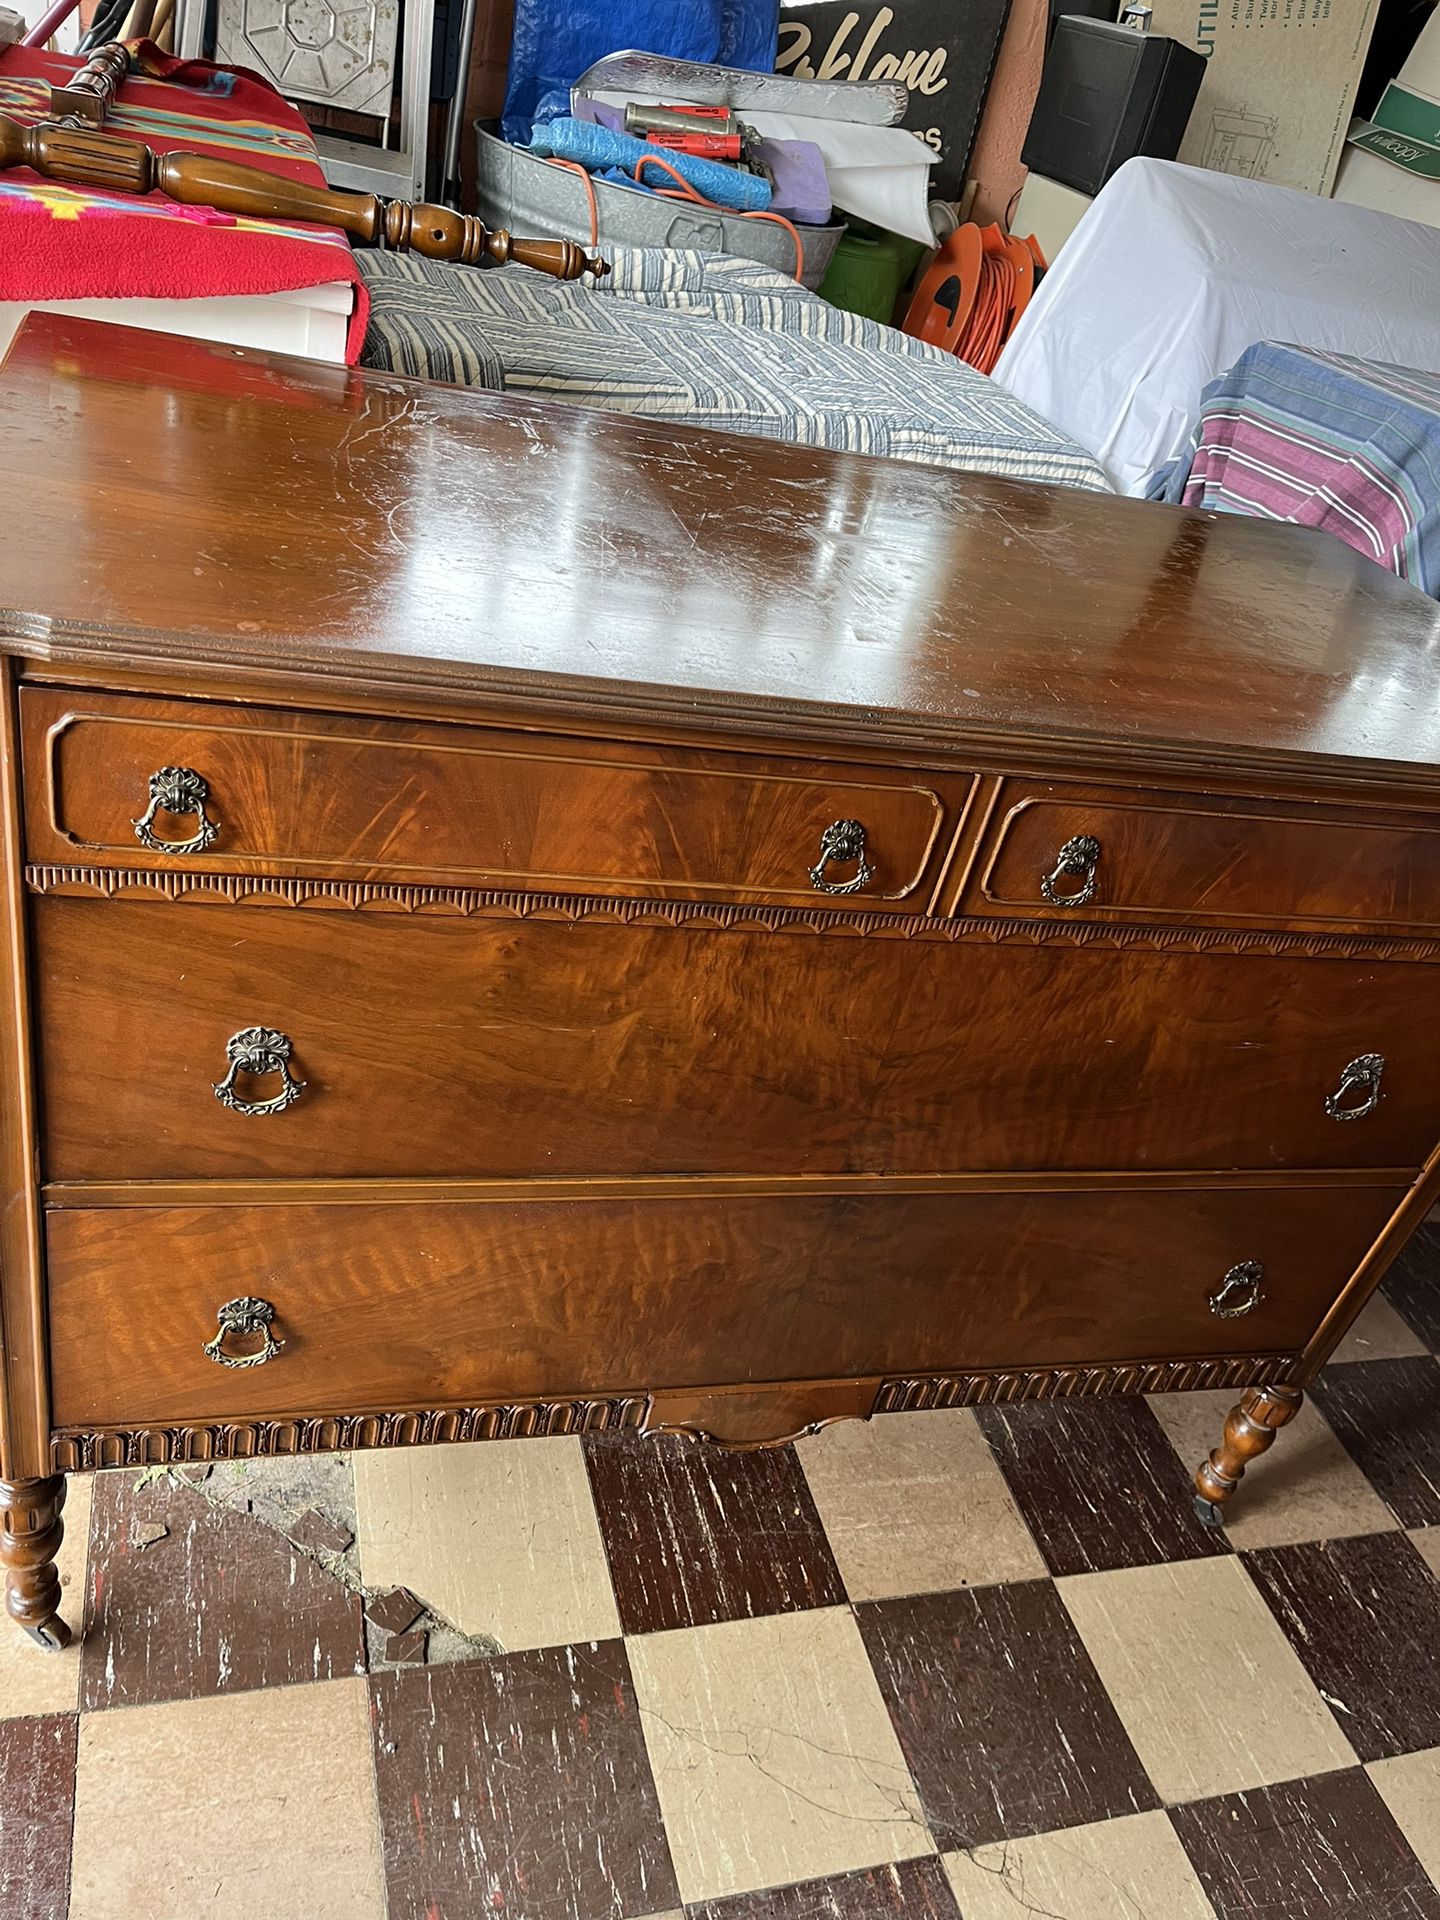 Vintage Ornate Dresser